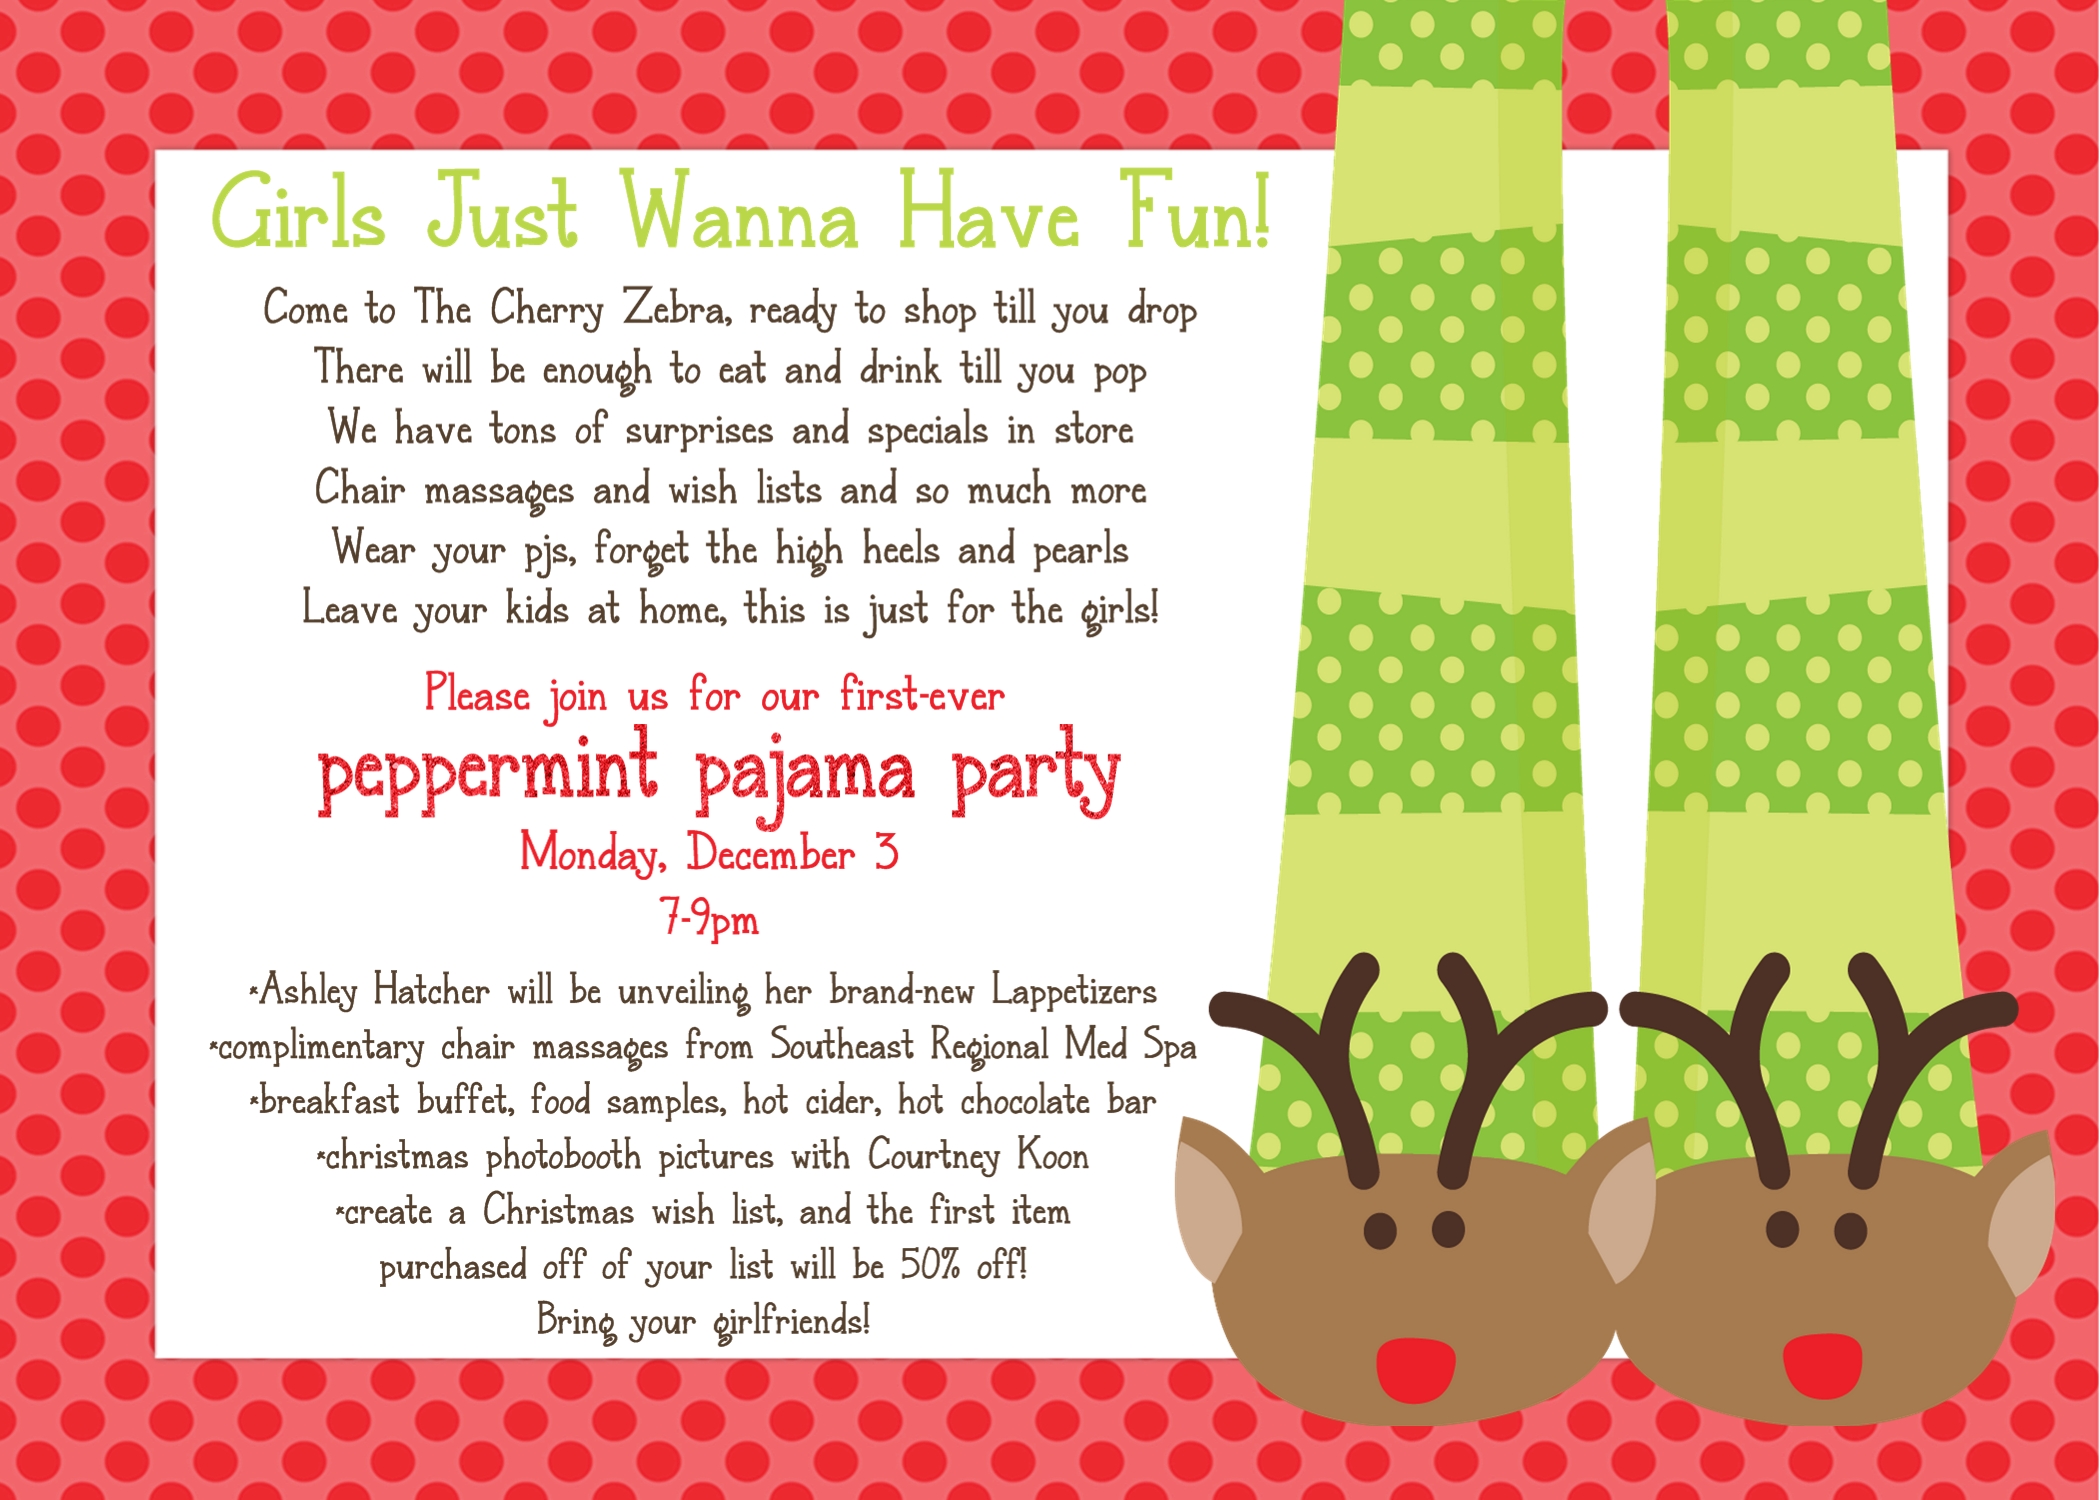 Cherry Zebra’s Peppermint Pajama Party